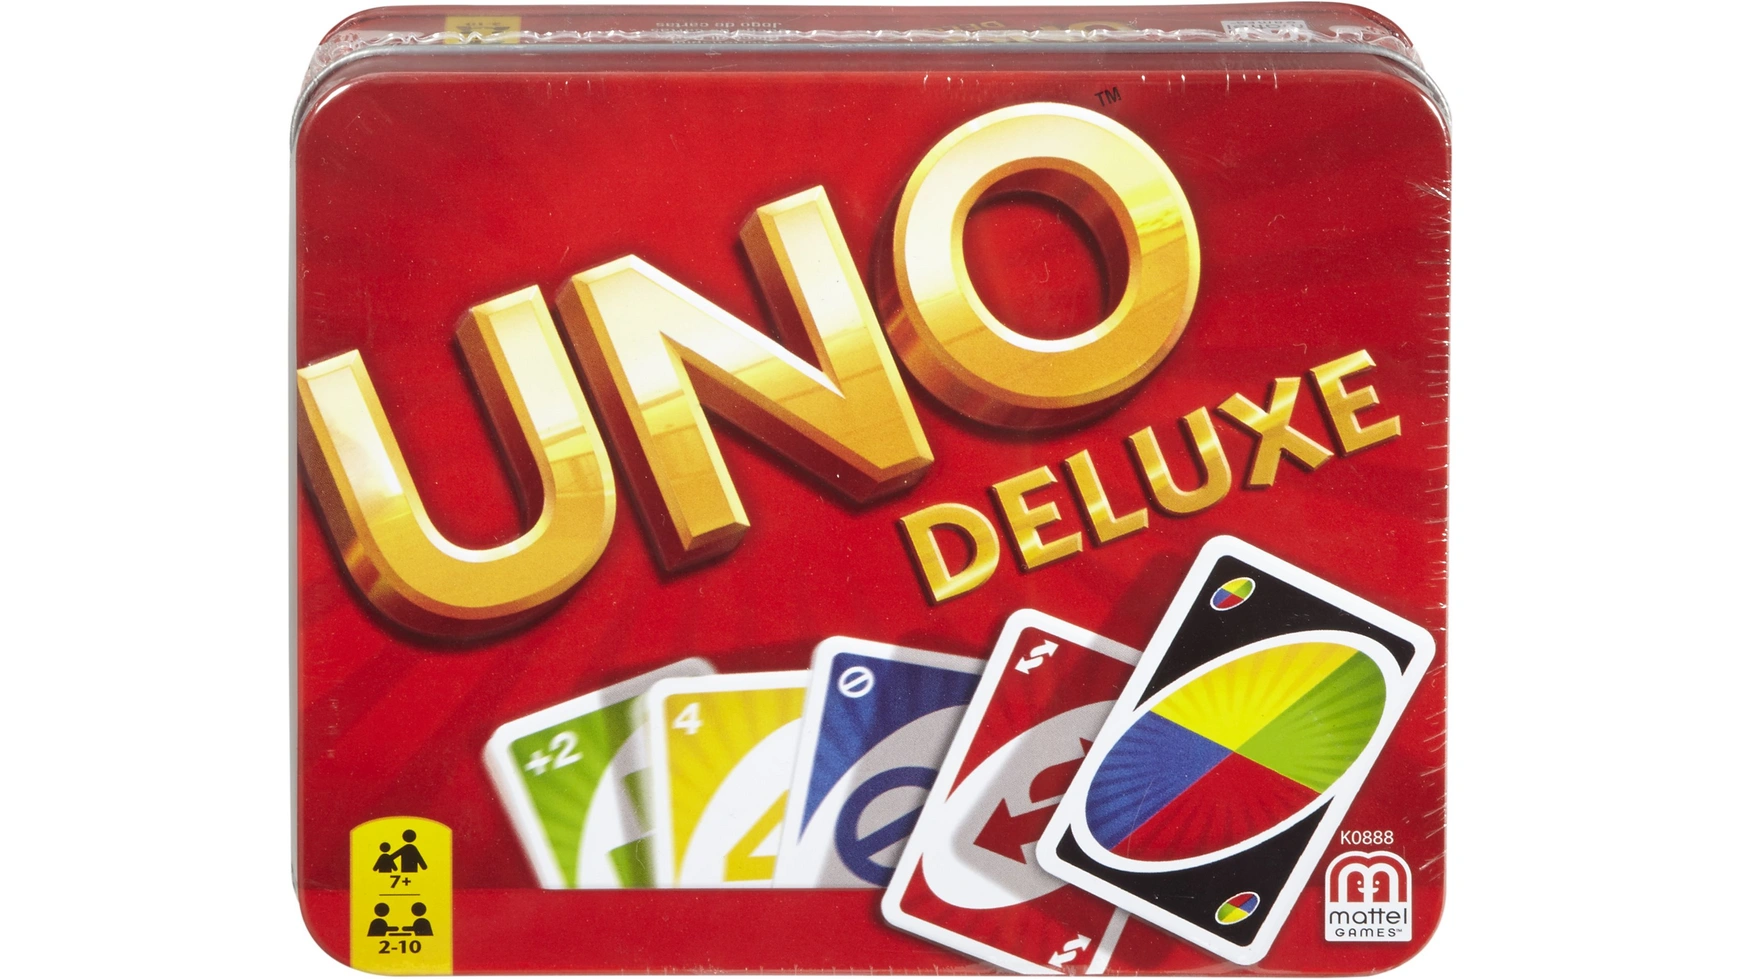 Металлическая коробка Mattel Games UNO Deluxe, карточная игра, настольная игра, детская игра uno в поисках дори карточная игра